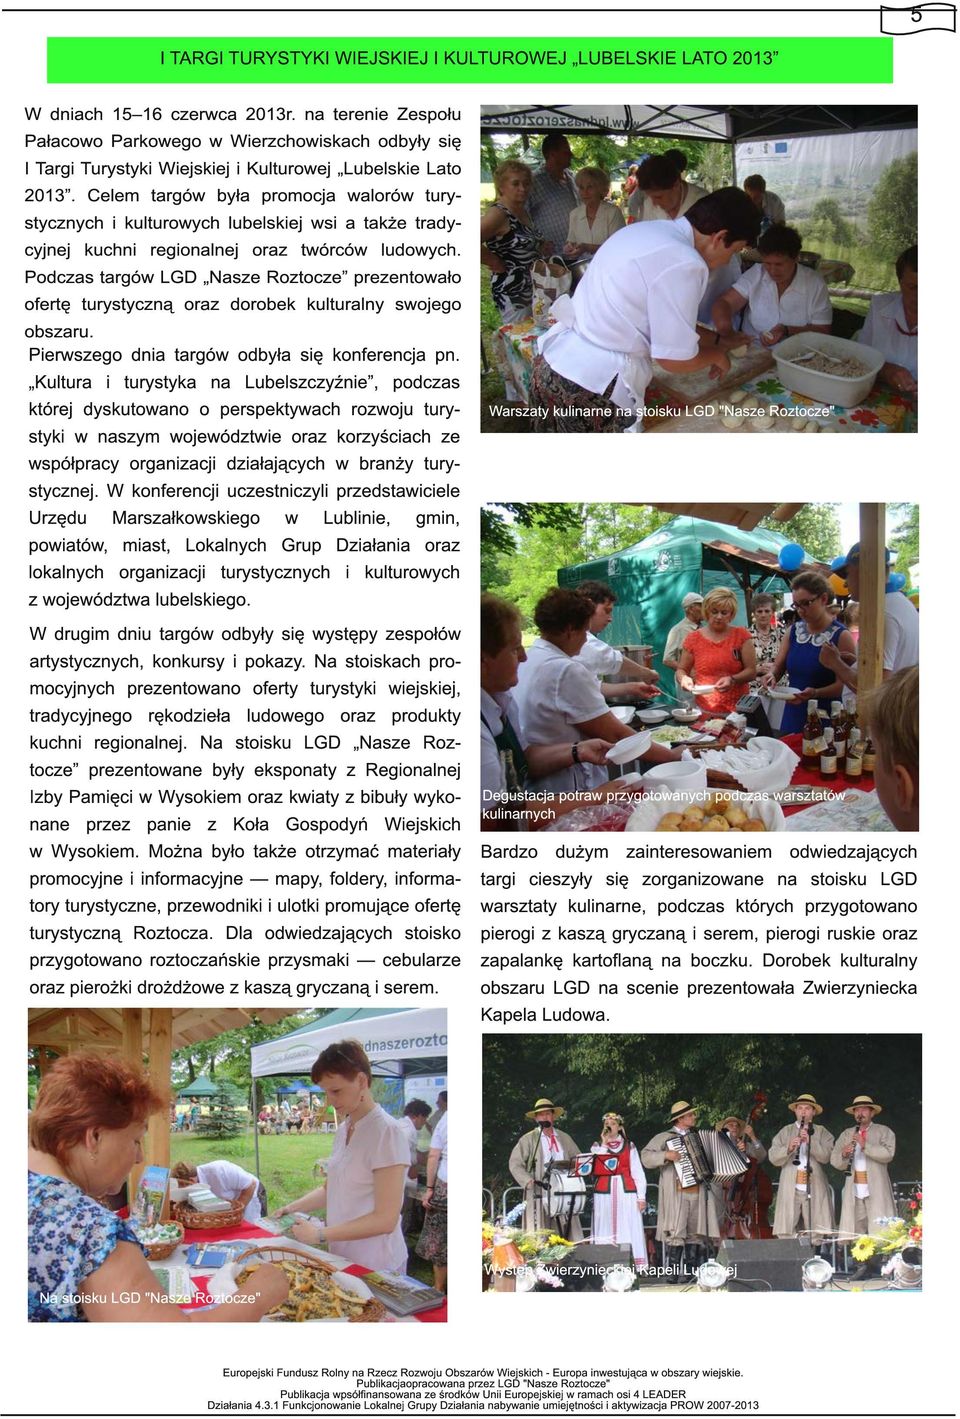 Celem targów była promocja walorów turystycznych i kulturowych lubelskiej wsi a także tradycyjnej kuchni regionalnej oraz twórców ludowych.